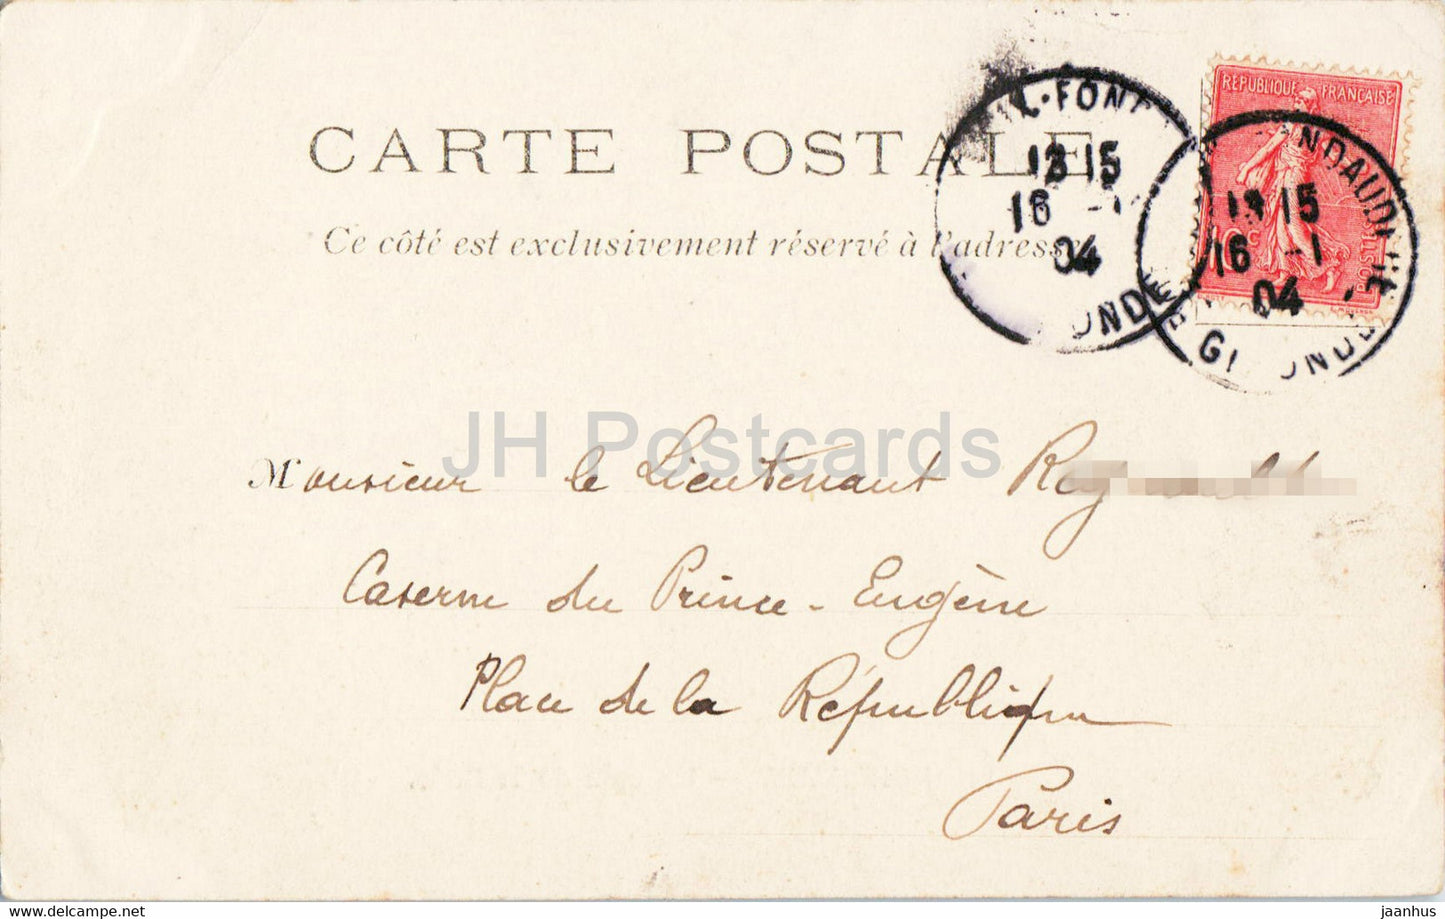 Bordeaux - Uncoin de la Rade - Segelboot - Schiff - Pferdekutsche - 24 - alte Postkarte - 1904 - Frankreich - gebraucht